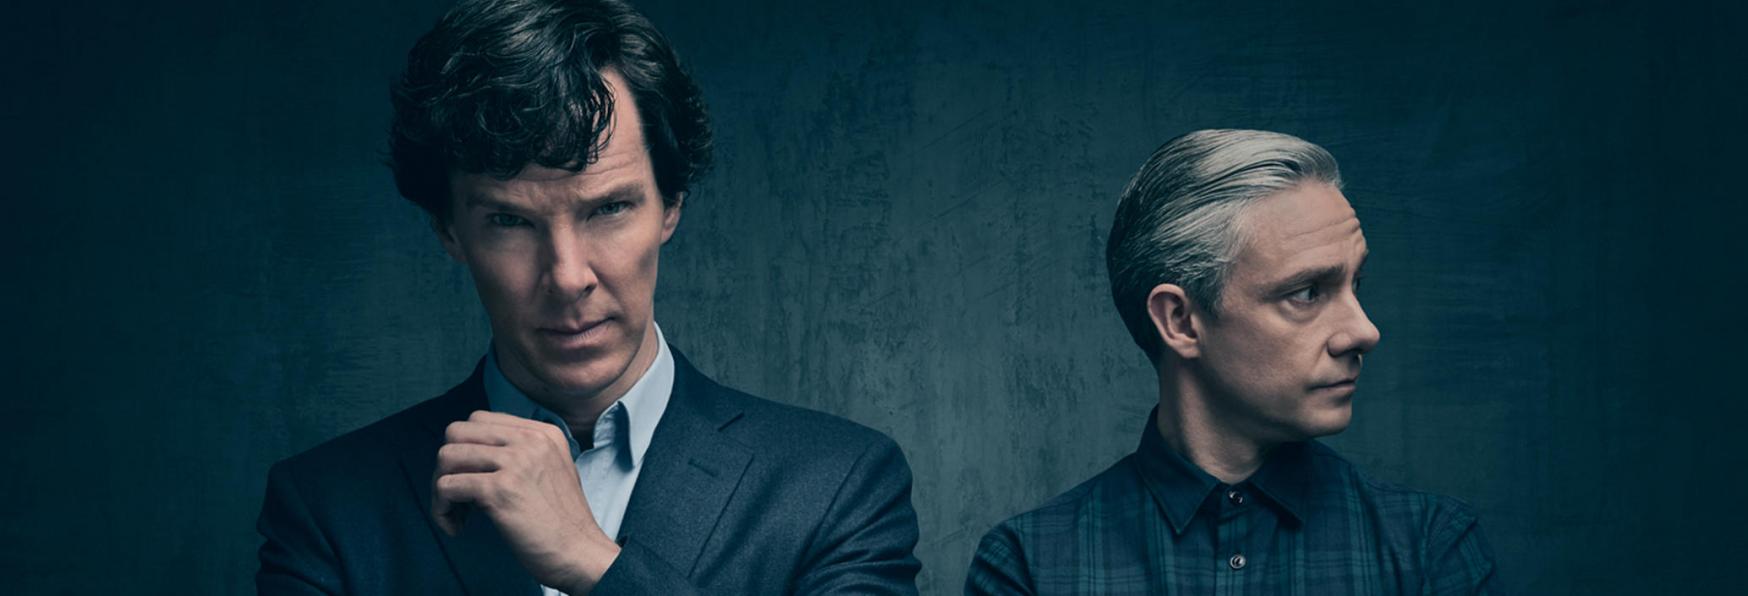 Dieci Curiosità che (forse) non sapevi su Sherlock, la Serie TV di BBC